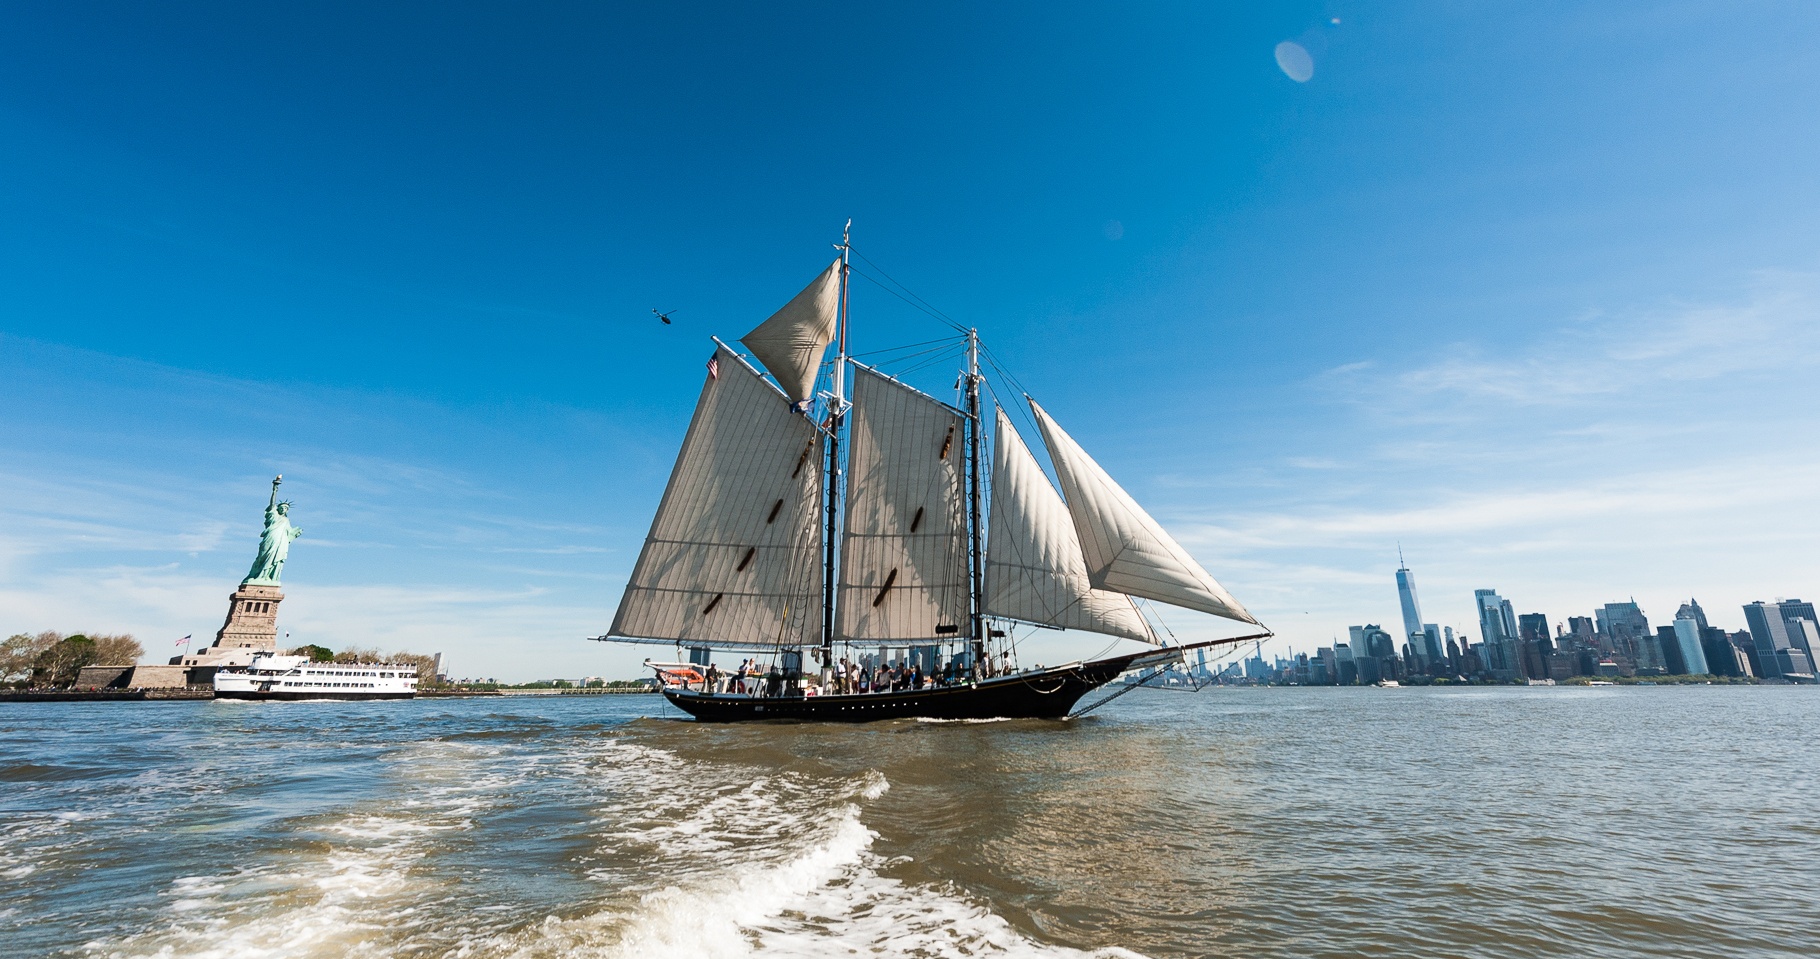 What’s Happening on schooner Pioneer?